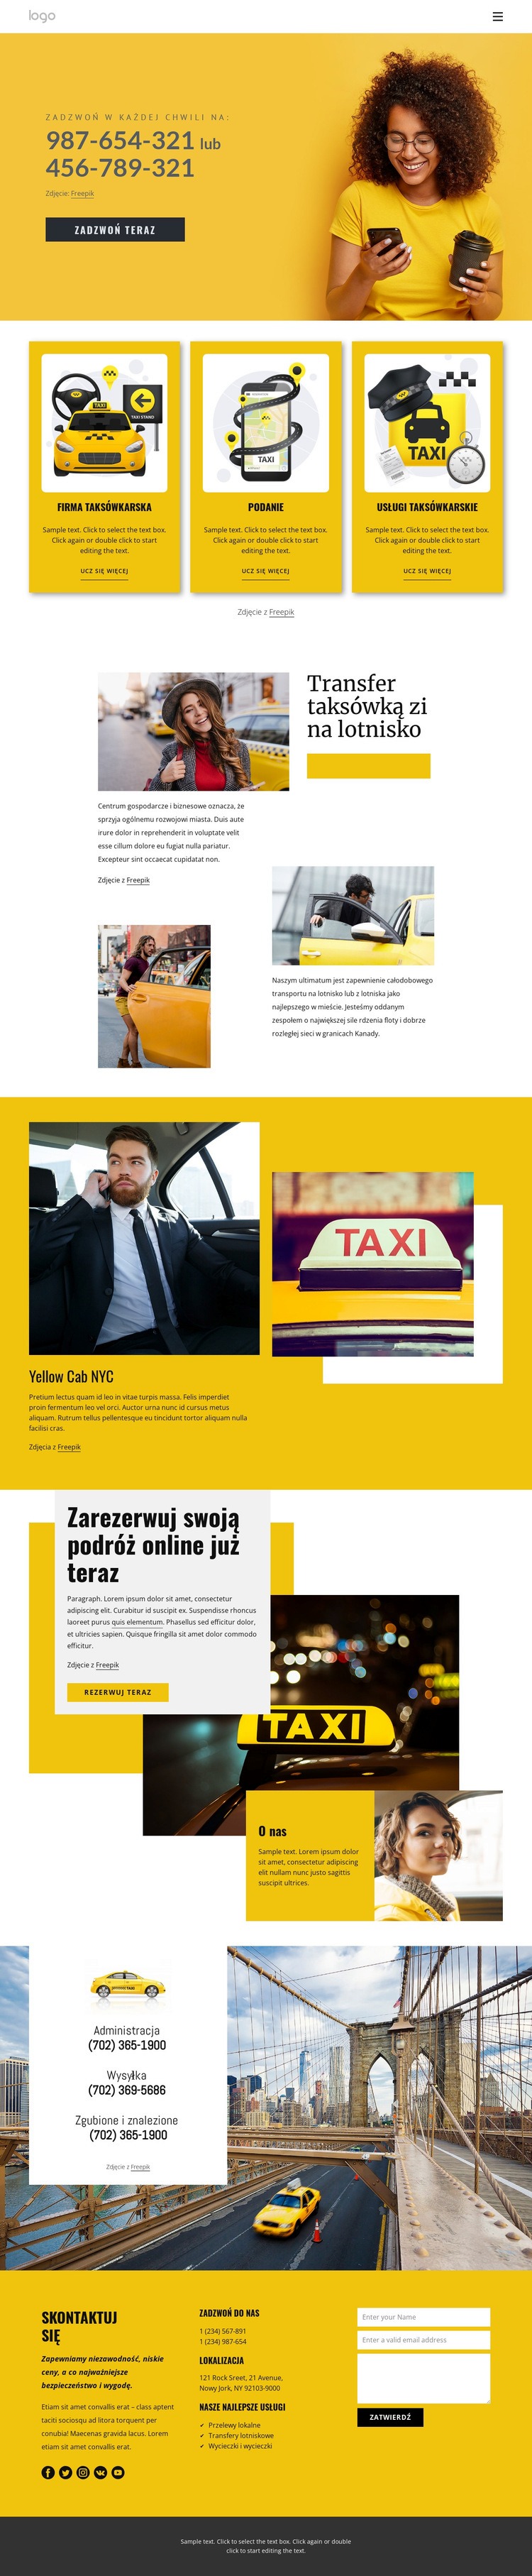 Jakość usług taksówkowych Szablon jednej strony